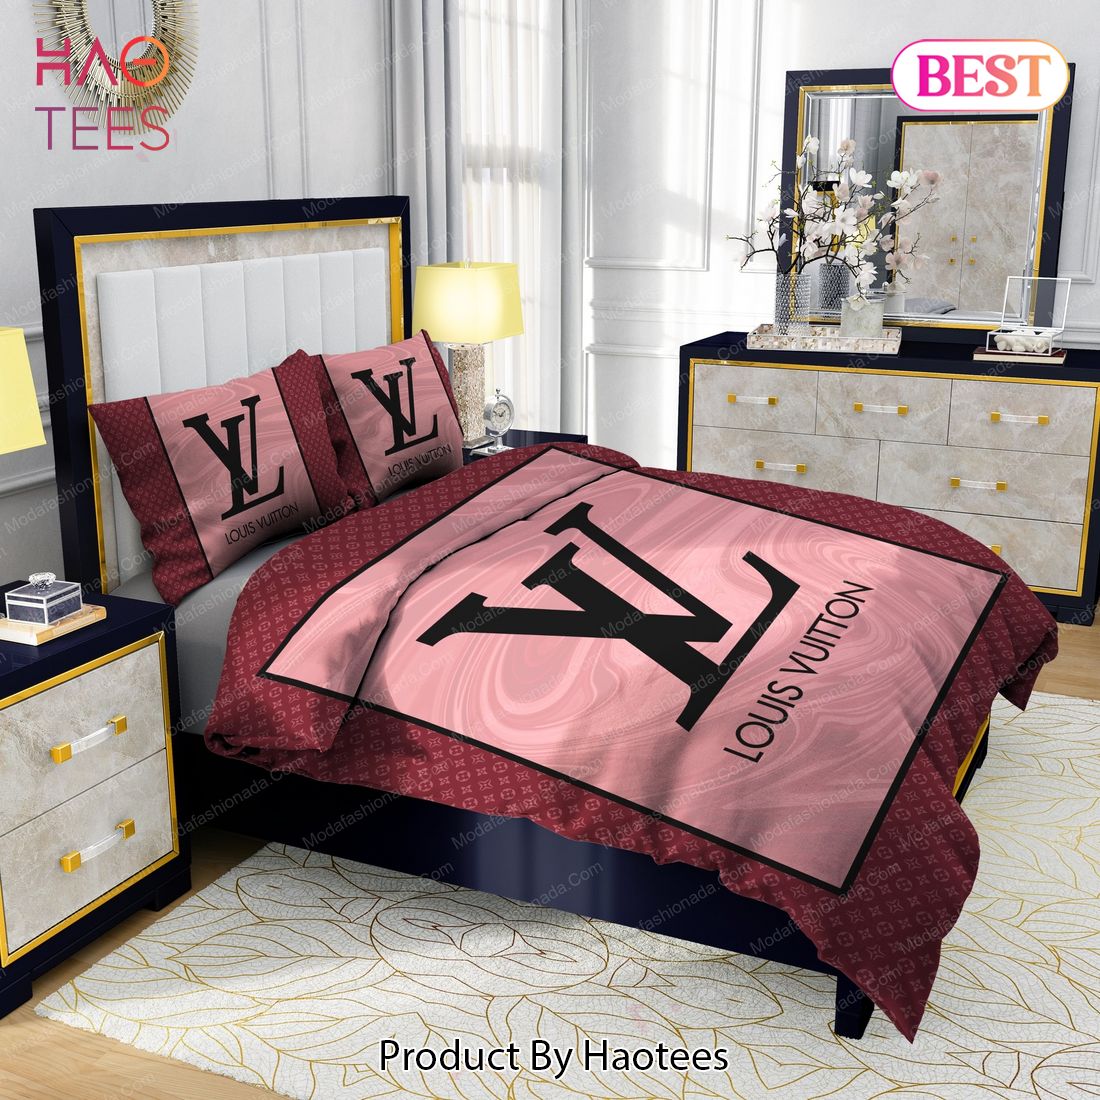 Black Veinstone And Gold Louis Vuitton Bedding Sets Bed Sets, Bedroom Sets, Comforter  Sets, Duvet Cover